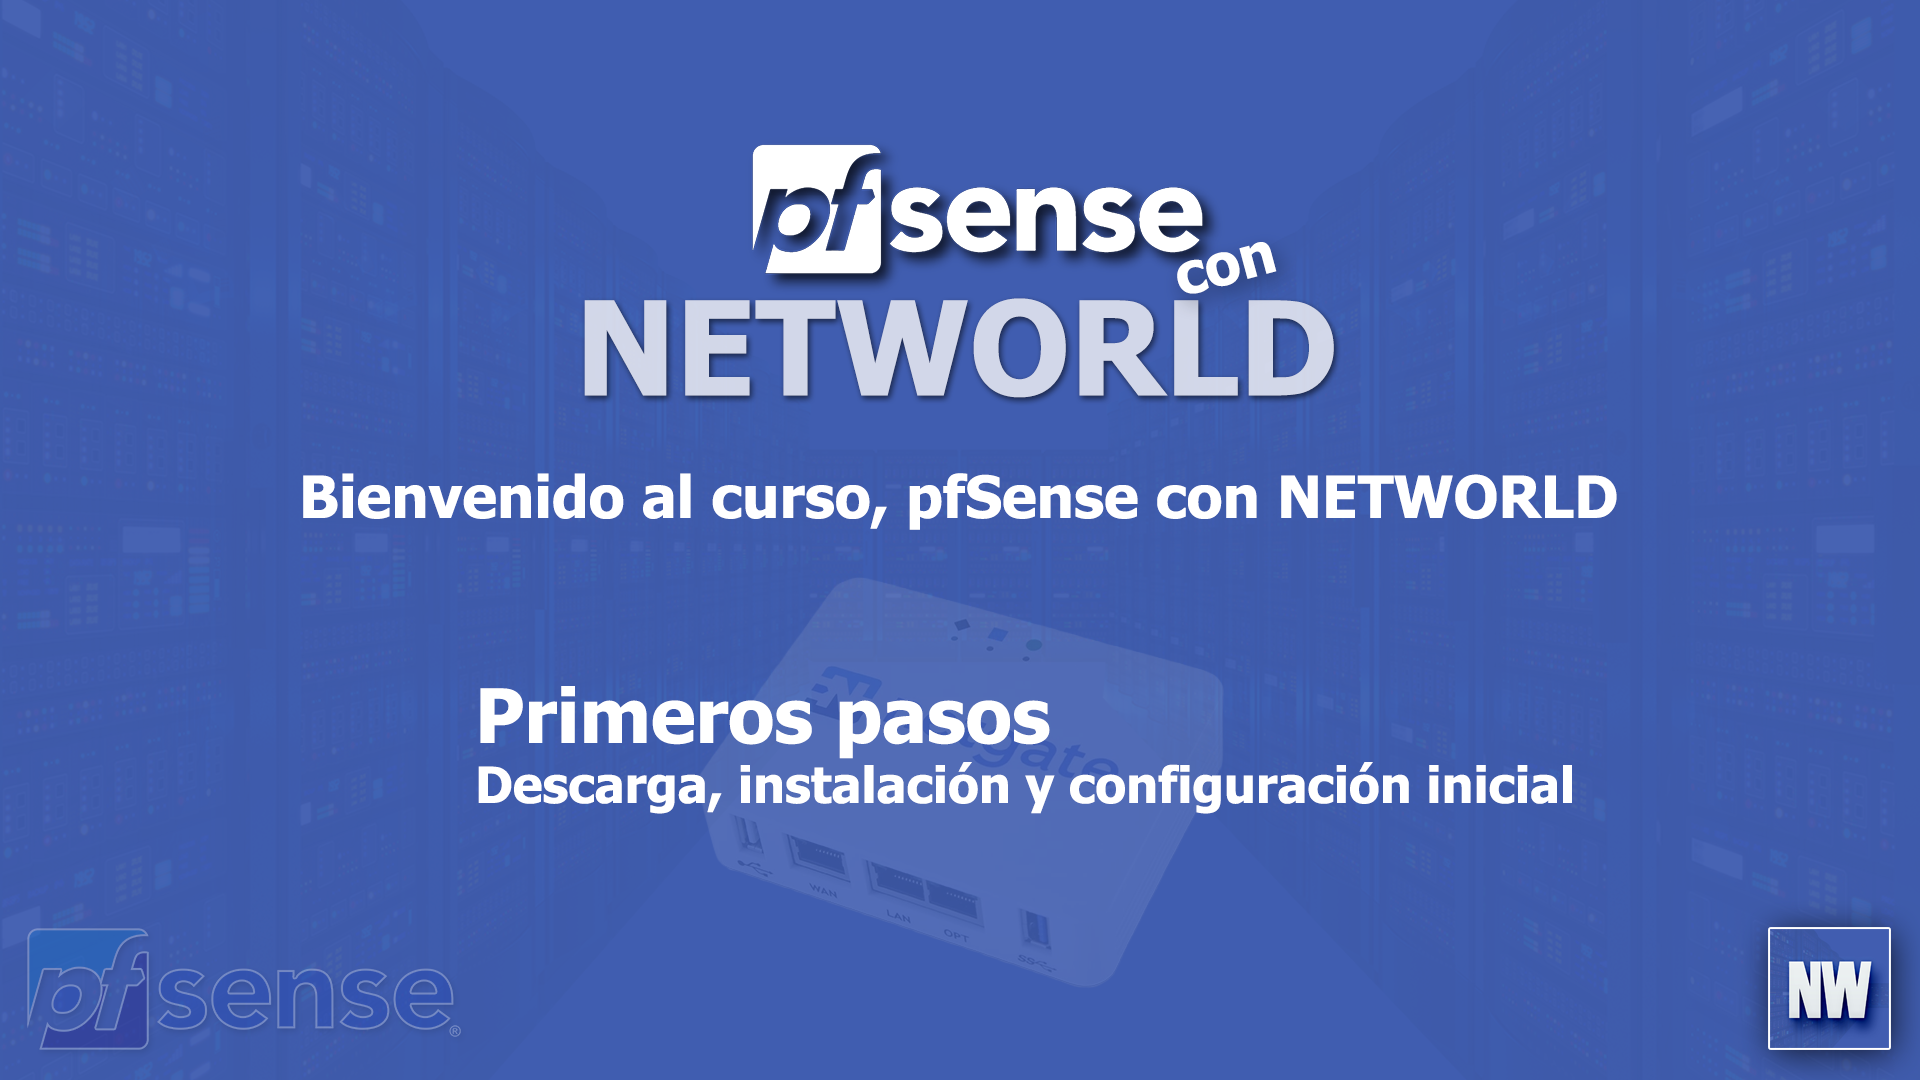 02 - pfSense con NETWORLD - Descarga, instalación y configuración inicial